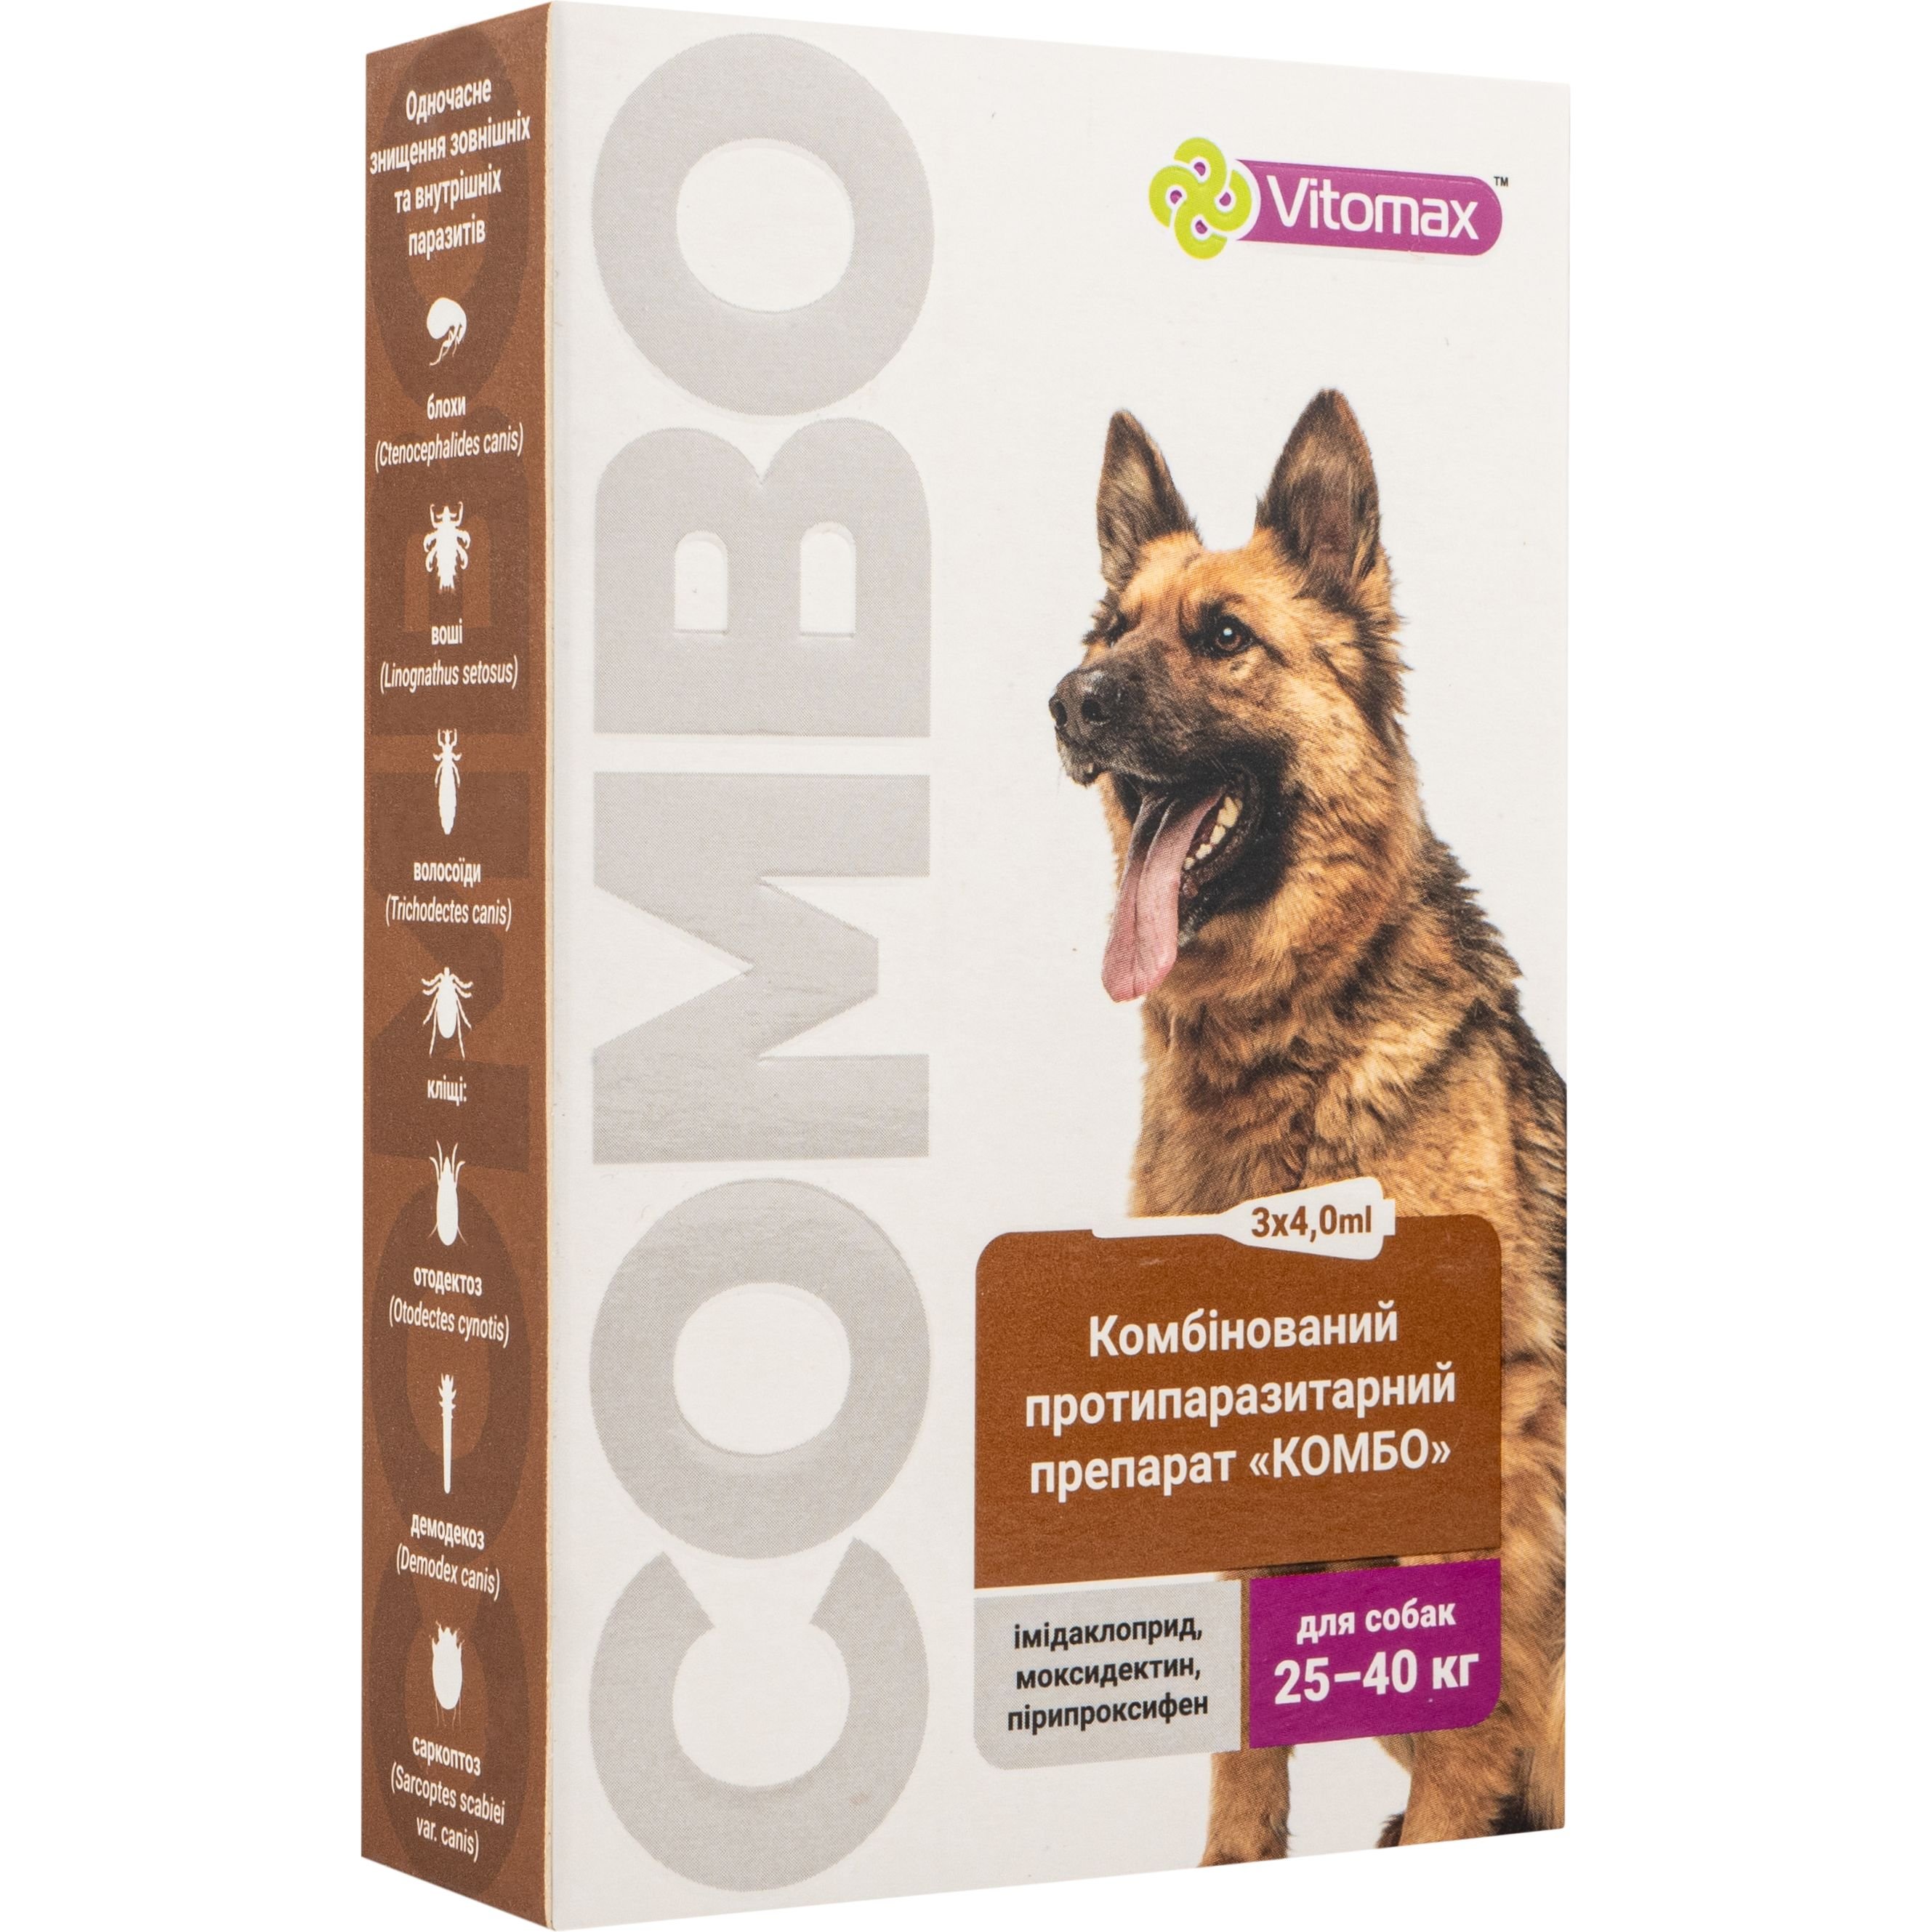 Краплі Vitomax комбо для собак 25 - 40 кг, 4.0 мл, 3 шт. - фото 1